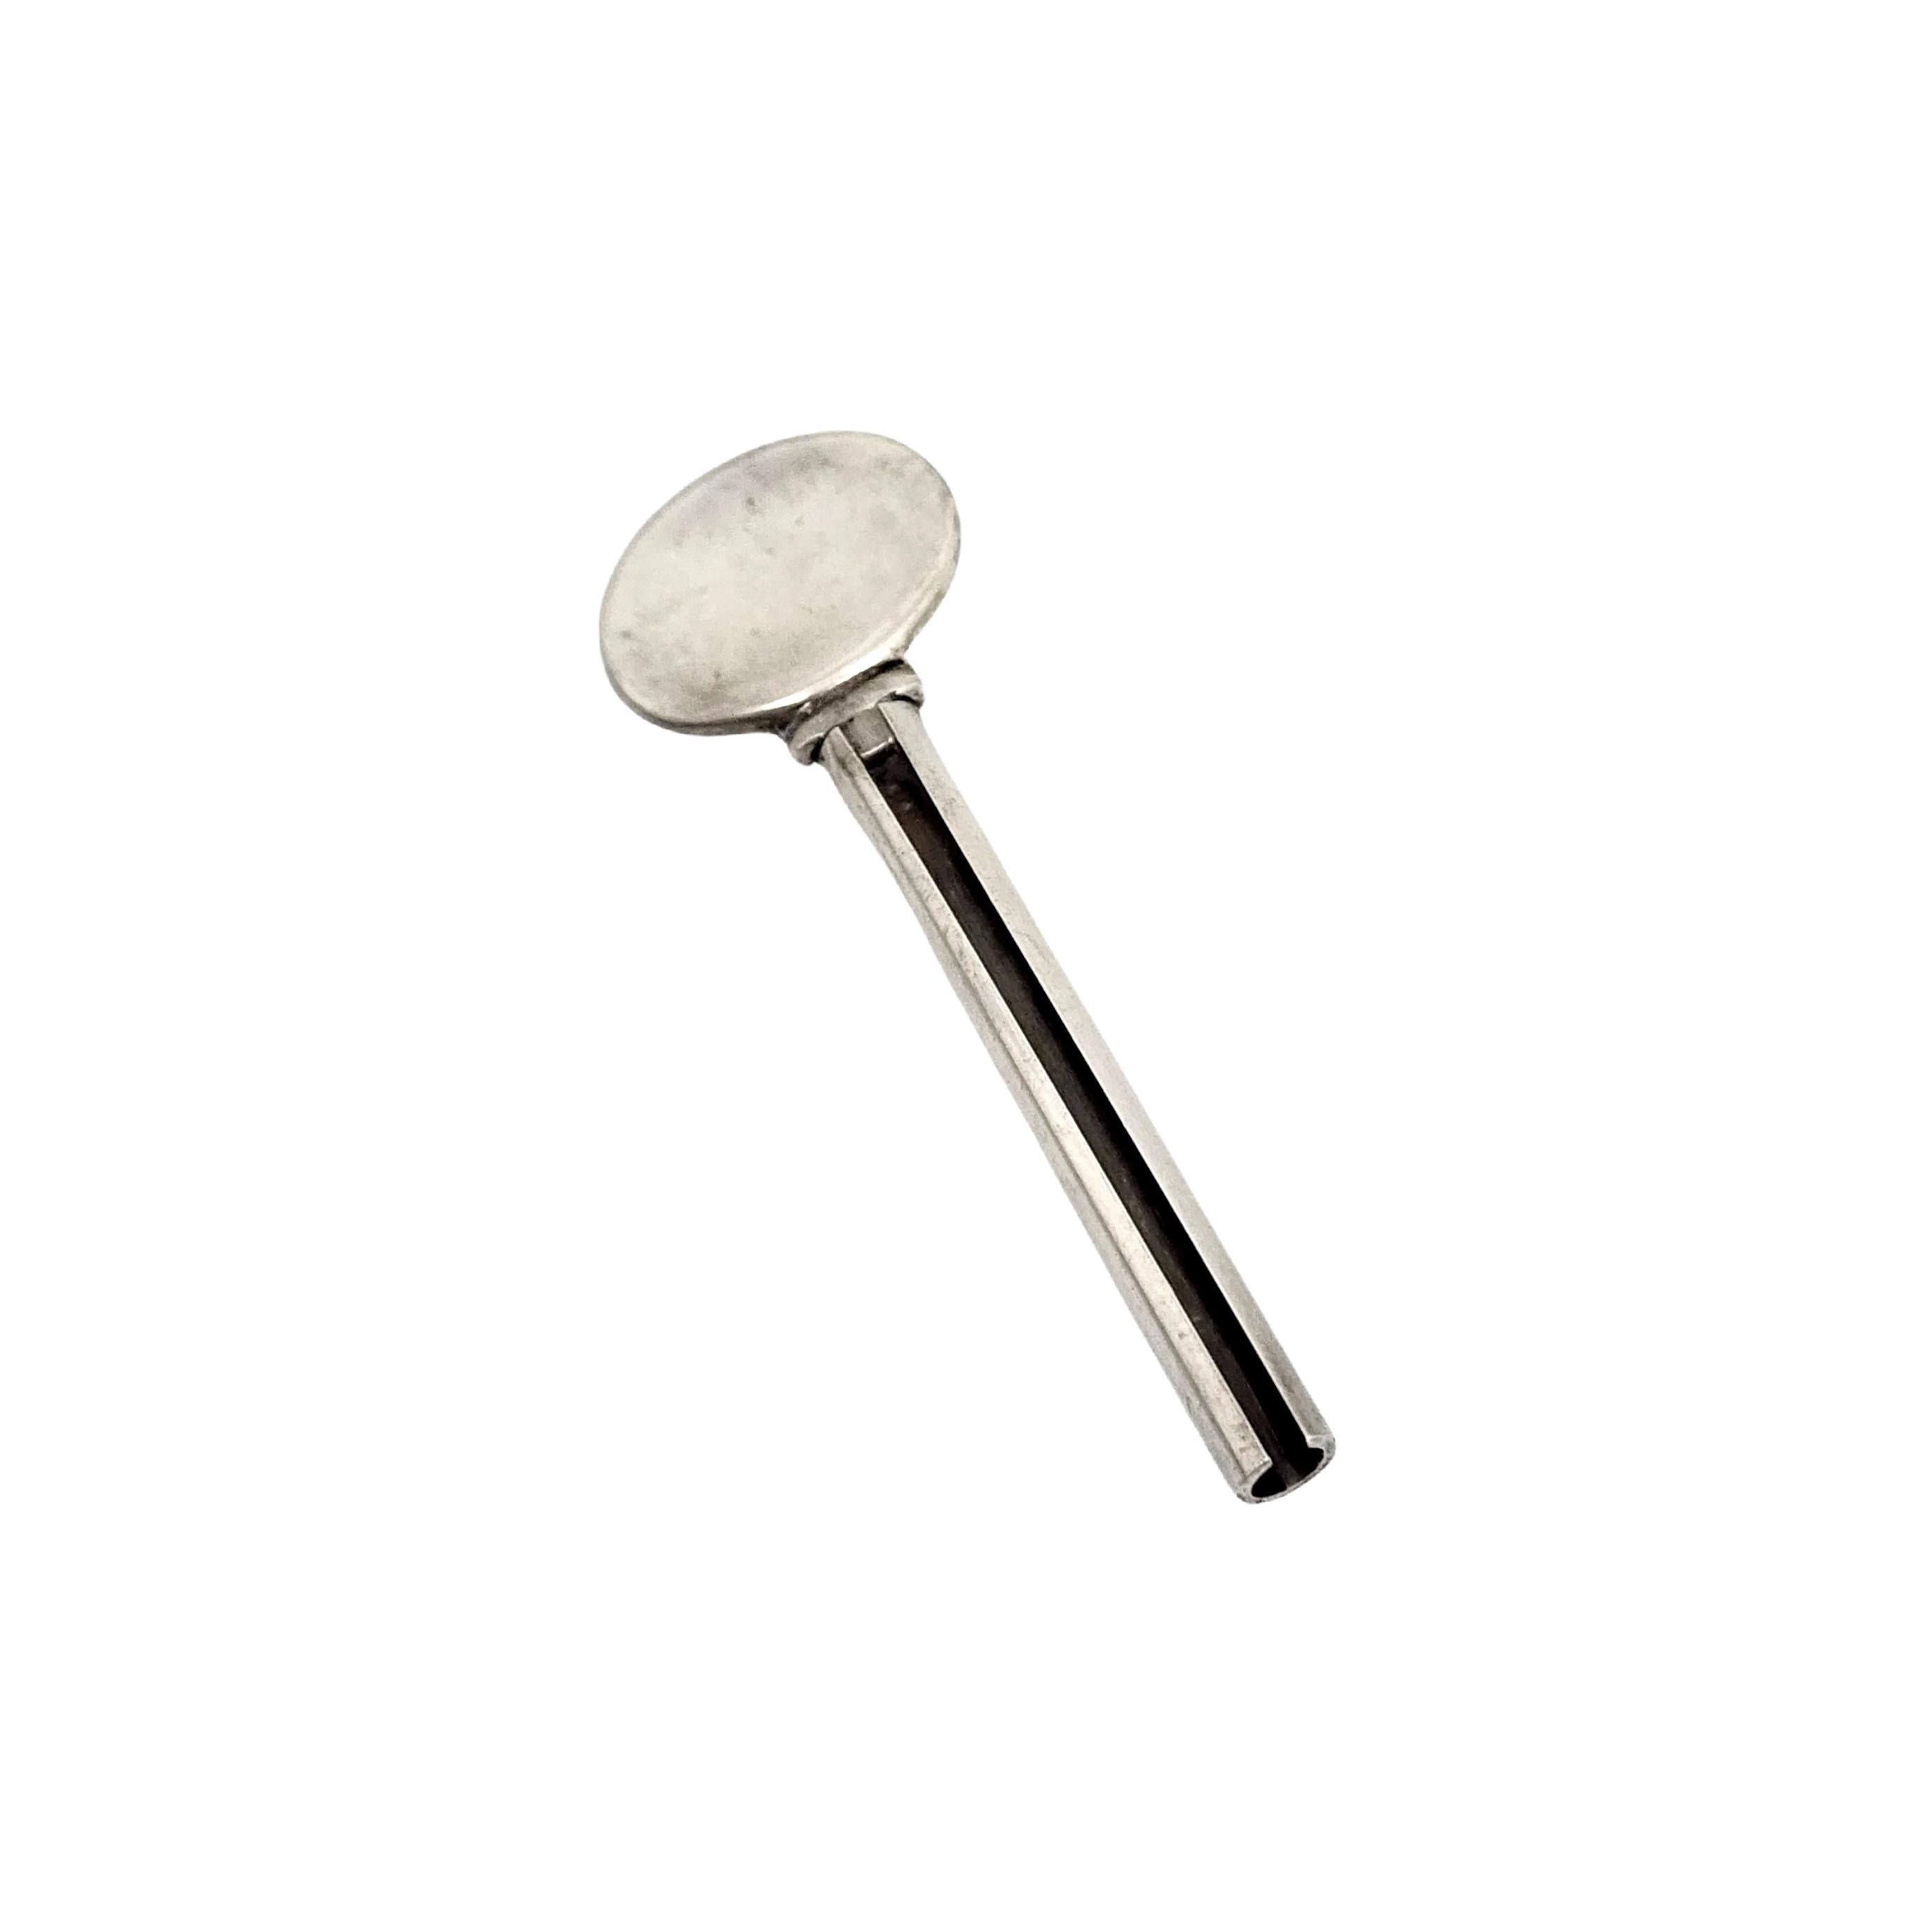 Tiffany & Co Sterling Silber Zahnpastatube Squeezer Schlüssel.

Authentischer Tiffany-Schlüssel, der zum Drücken und Drehen der Zahnpastatube verwendet wird.

Maßnahmen ca. 2 13/16 